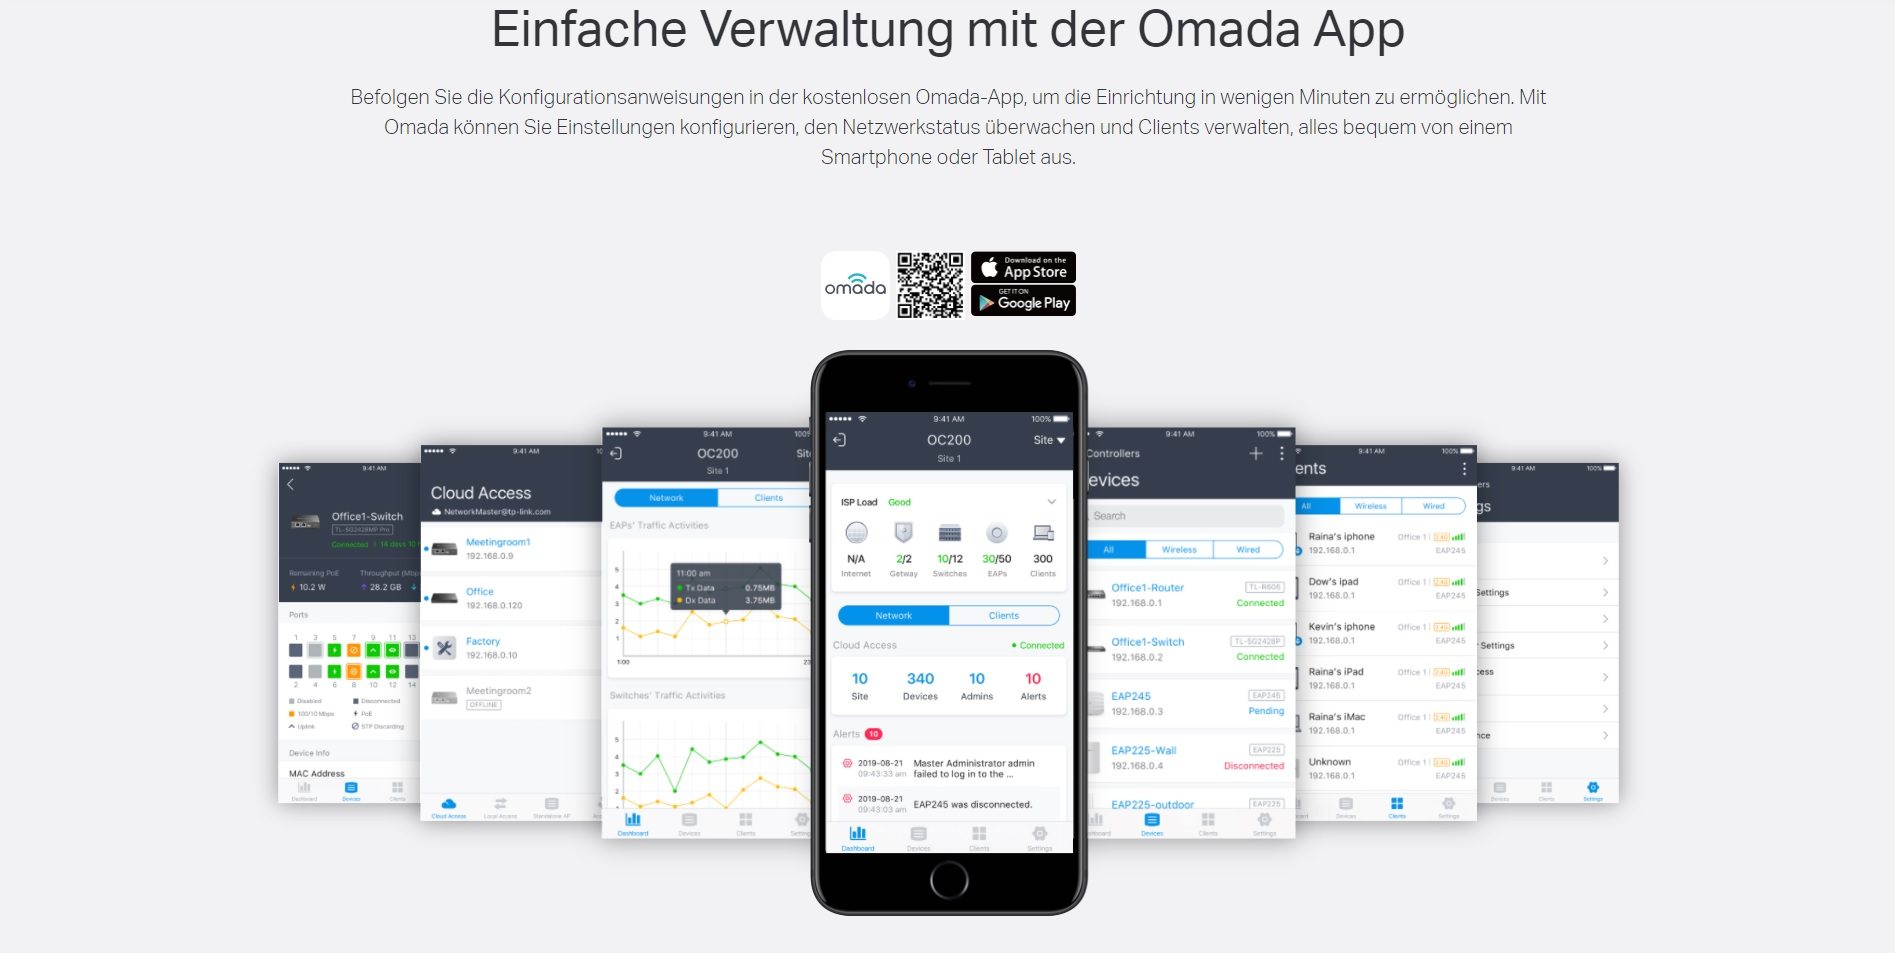 Einfache Verwaltung mit der Omada App